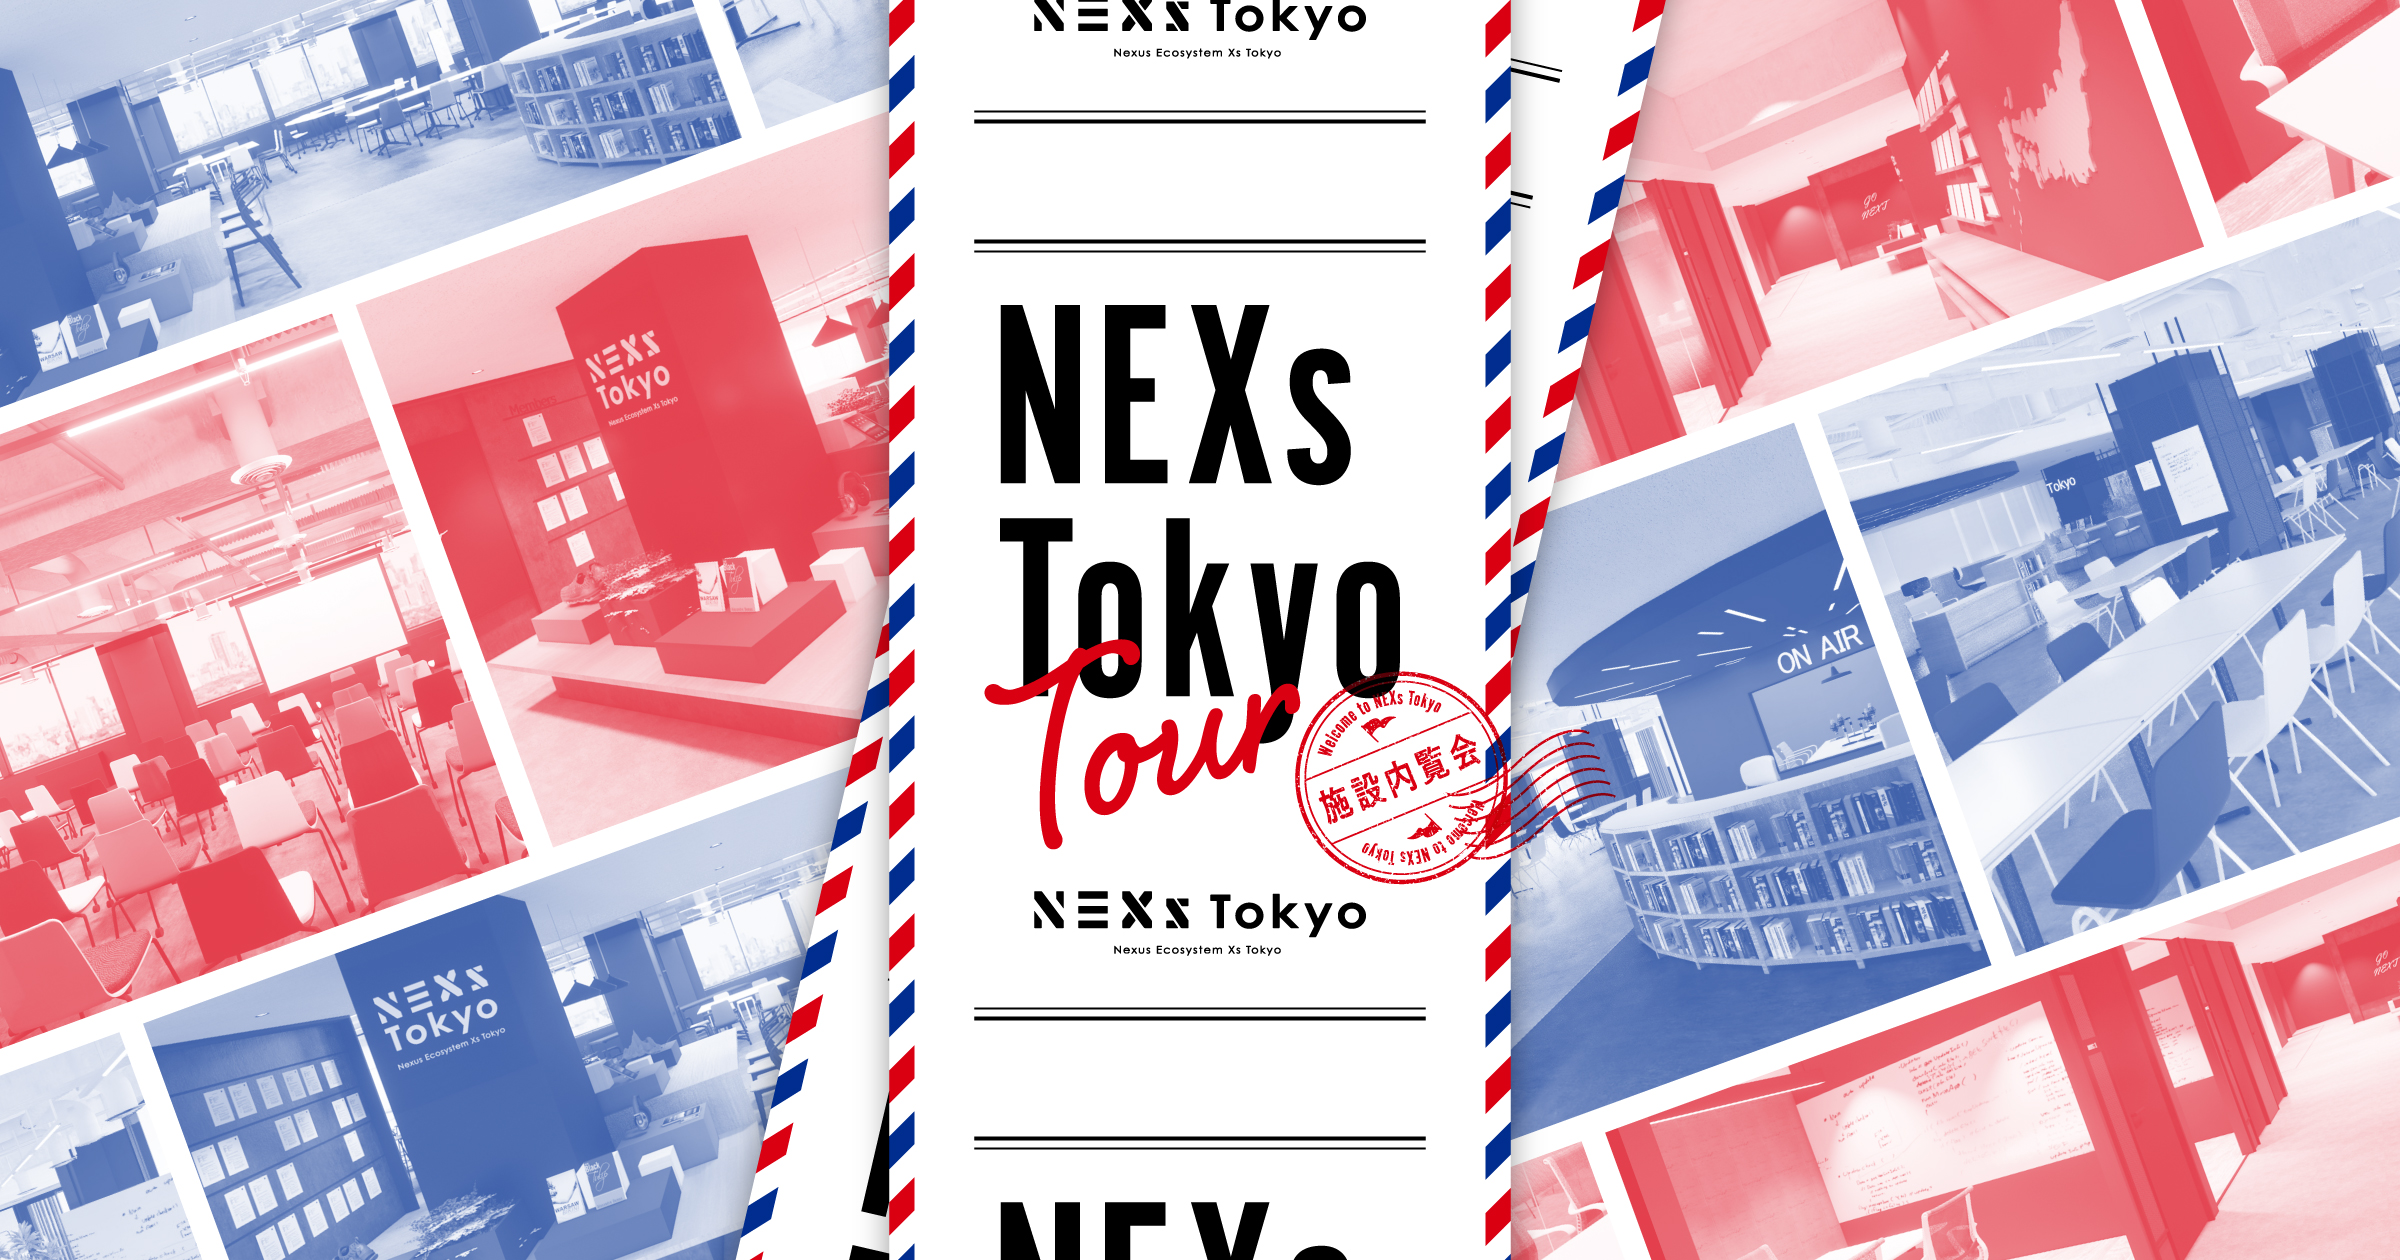 【現地開催】NEXs Tokyo Tour 〜内覧会〜